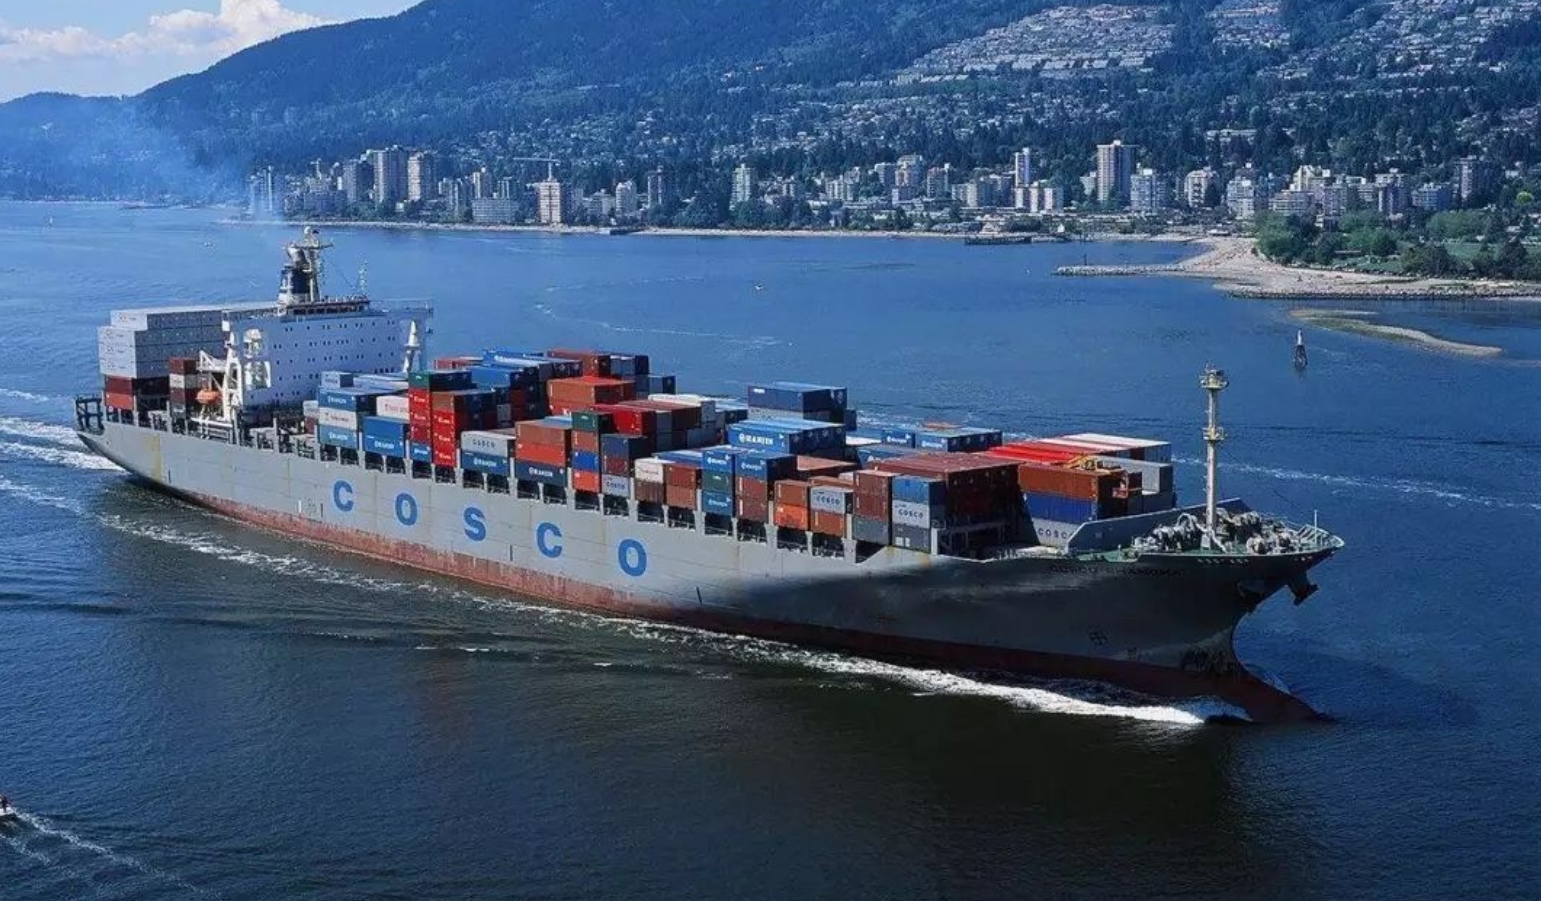 Russia's shipping difficulties affect metal trade - titanium, ferrotitanium, chromium, ferrochrome, cobalt, nickel affected